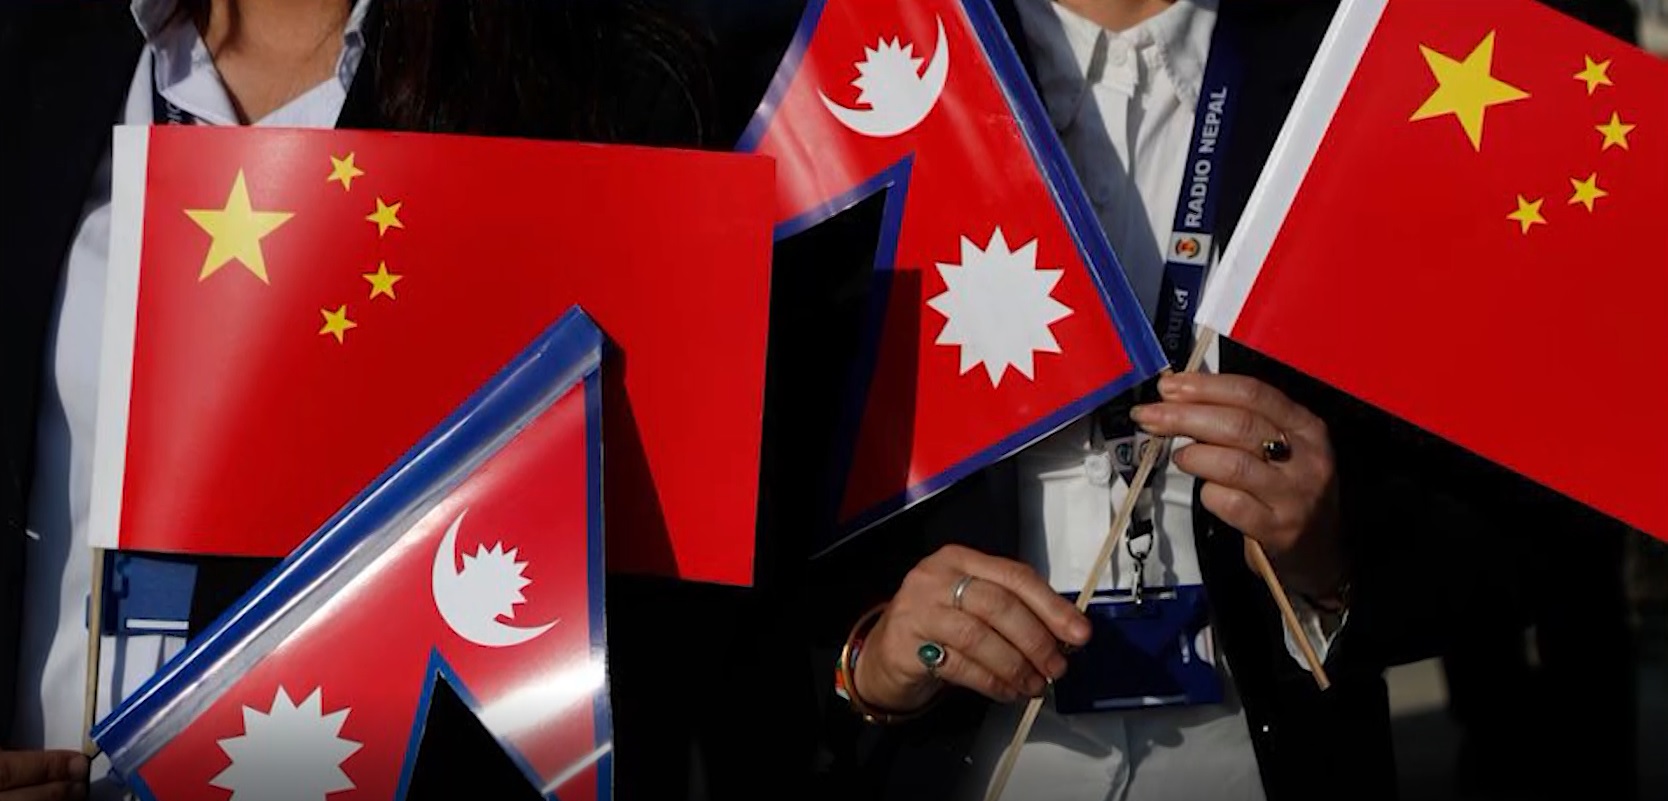 नेपाल–चीन कूटनीतिक सम्बन्ध स्थापनाको ६५औं वर्षगाँठ, दुई देशका नेताहरुबीच शुभकामना आदानप्रदान